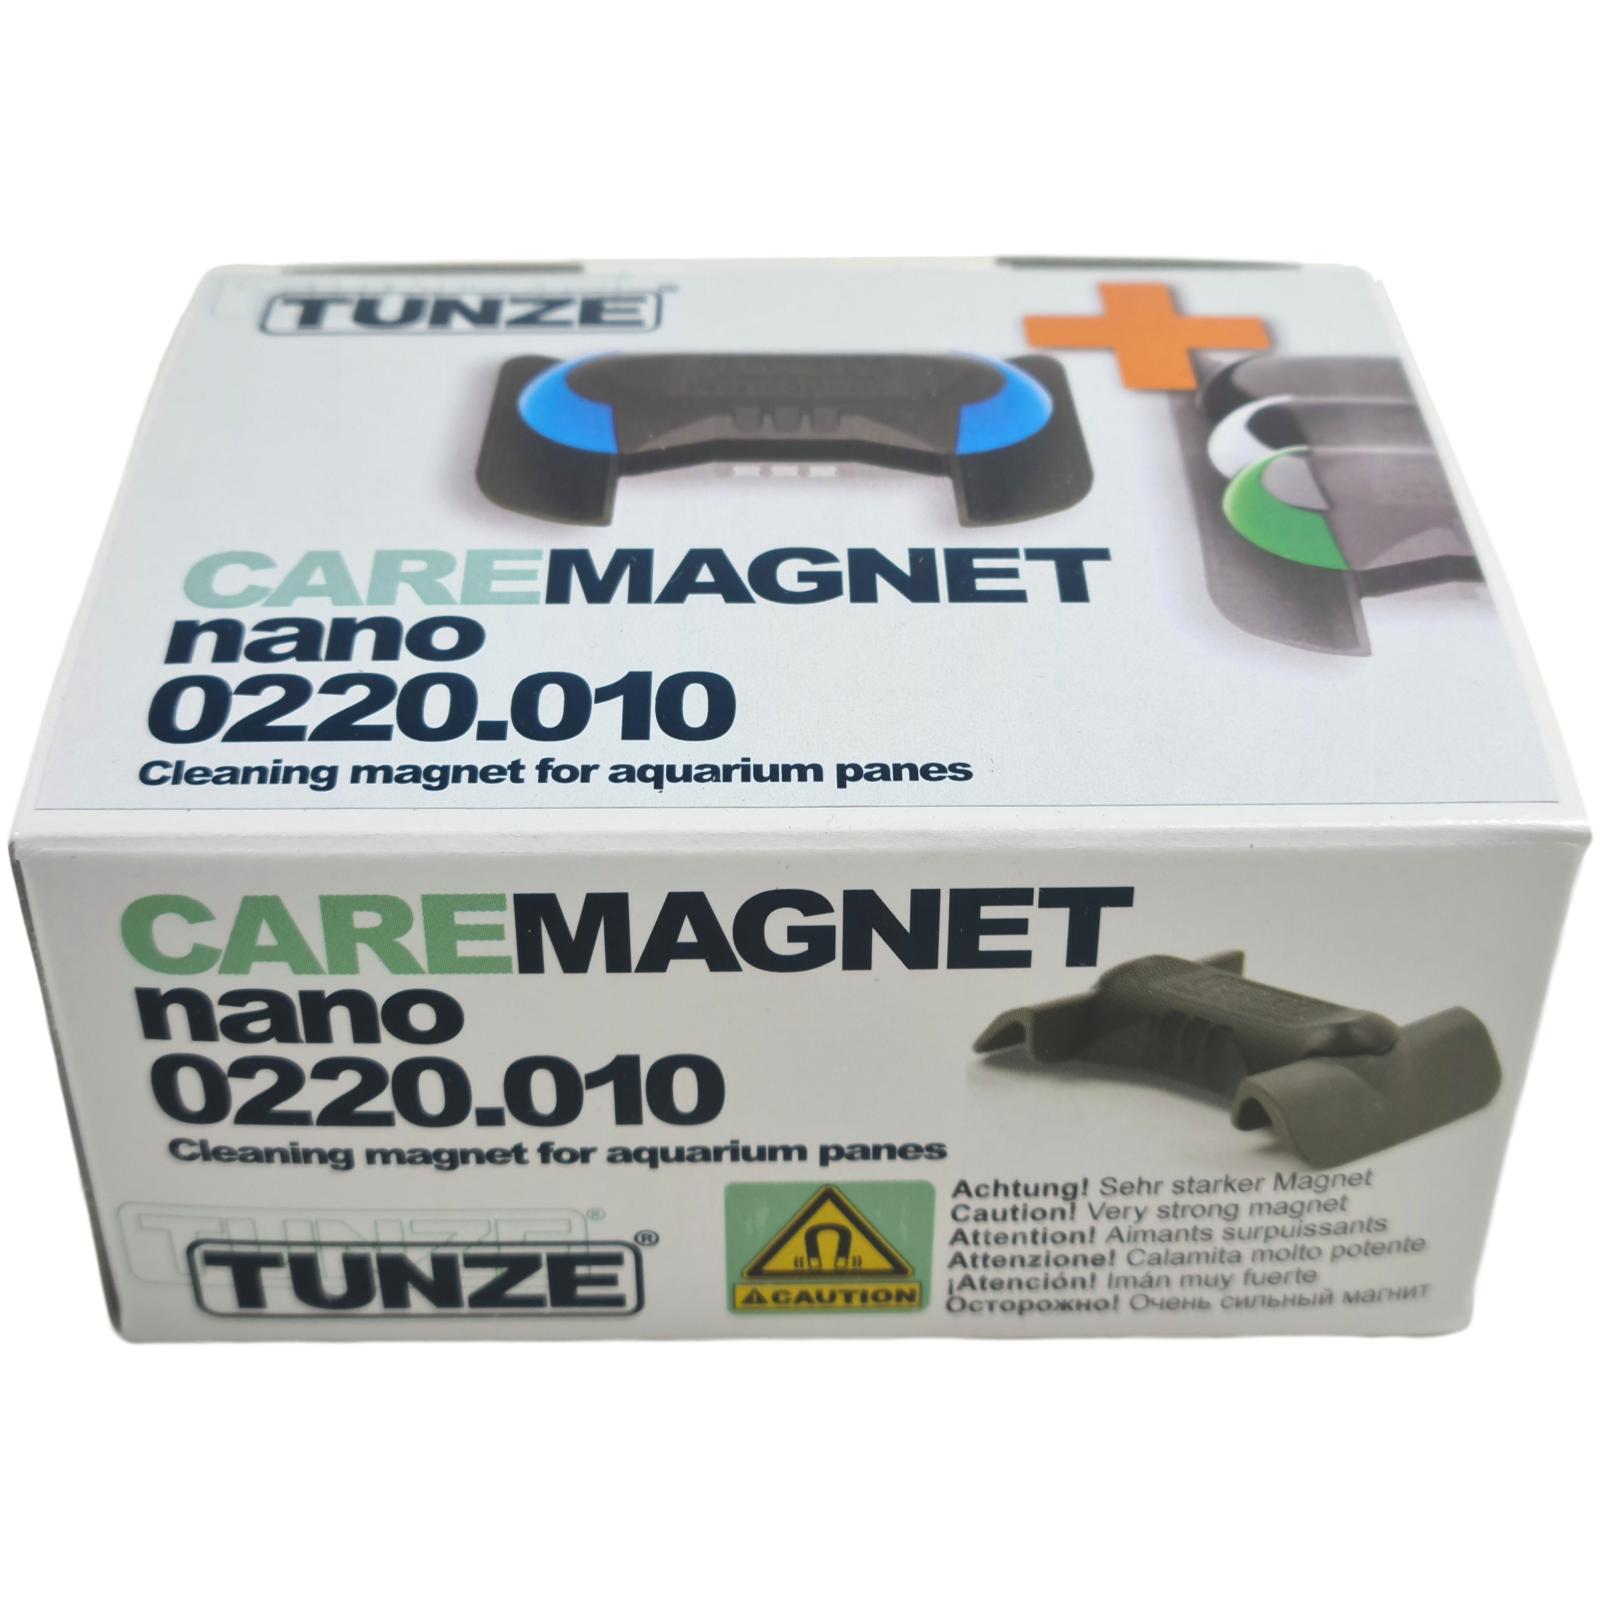 Tunze Care Magnet Scheibenreiniger nano, Algenentfernung / Algenmagneten, Zubehör / Sonstiges / Ersatzteile, Mehr